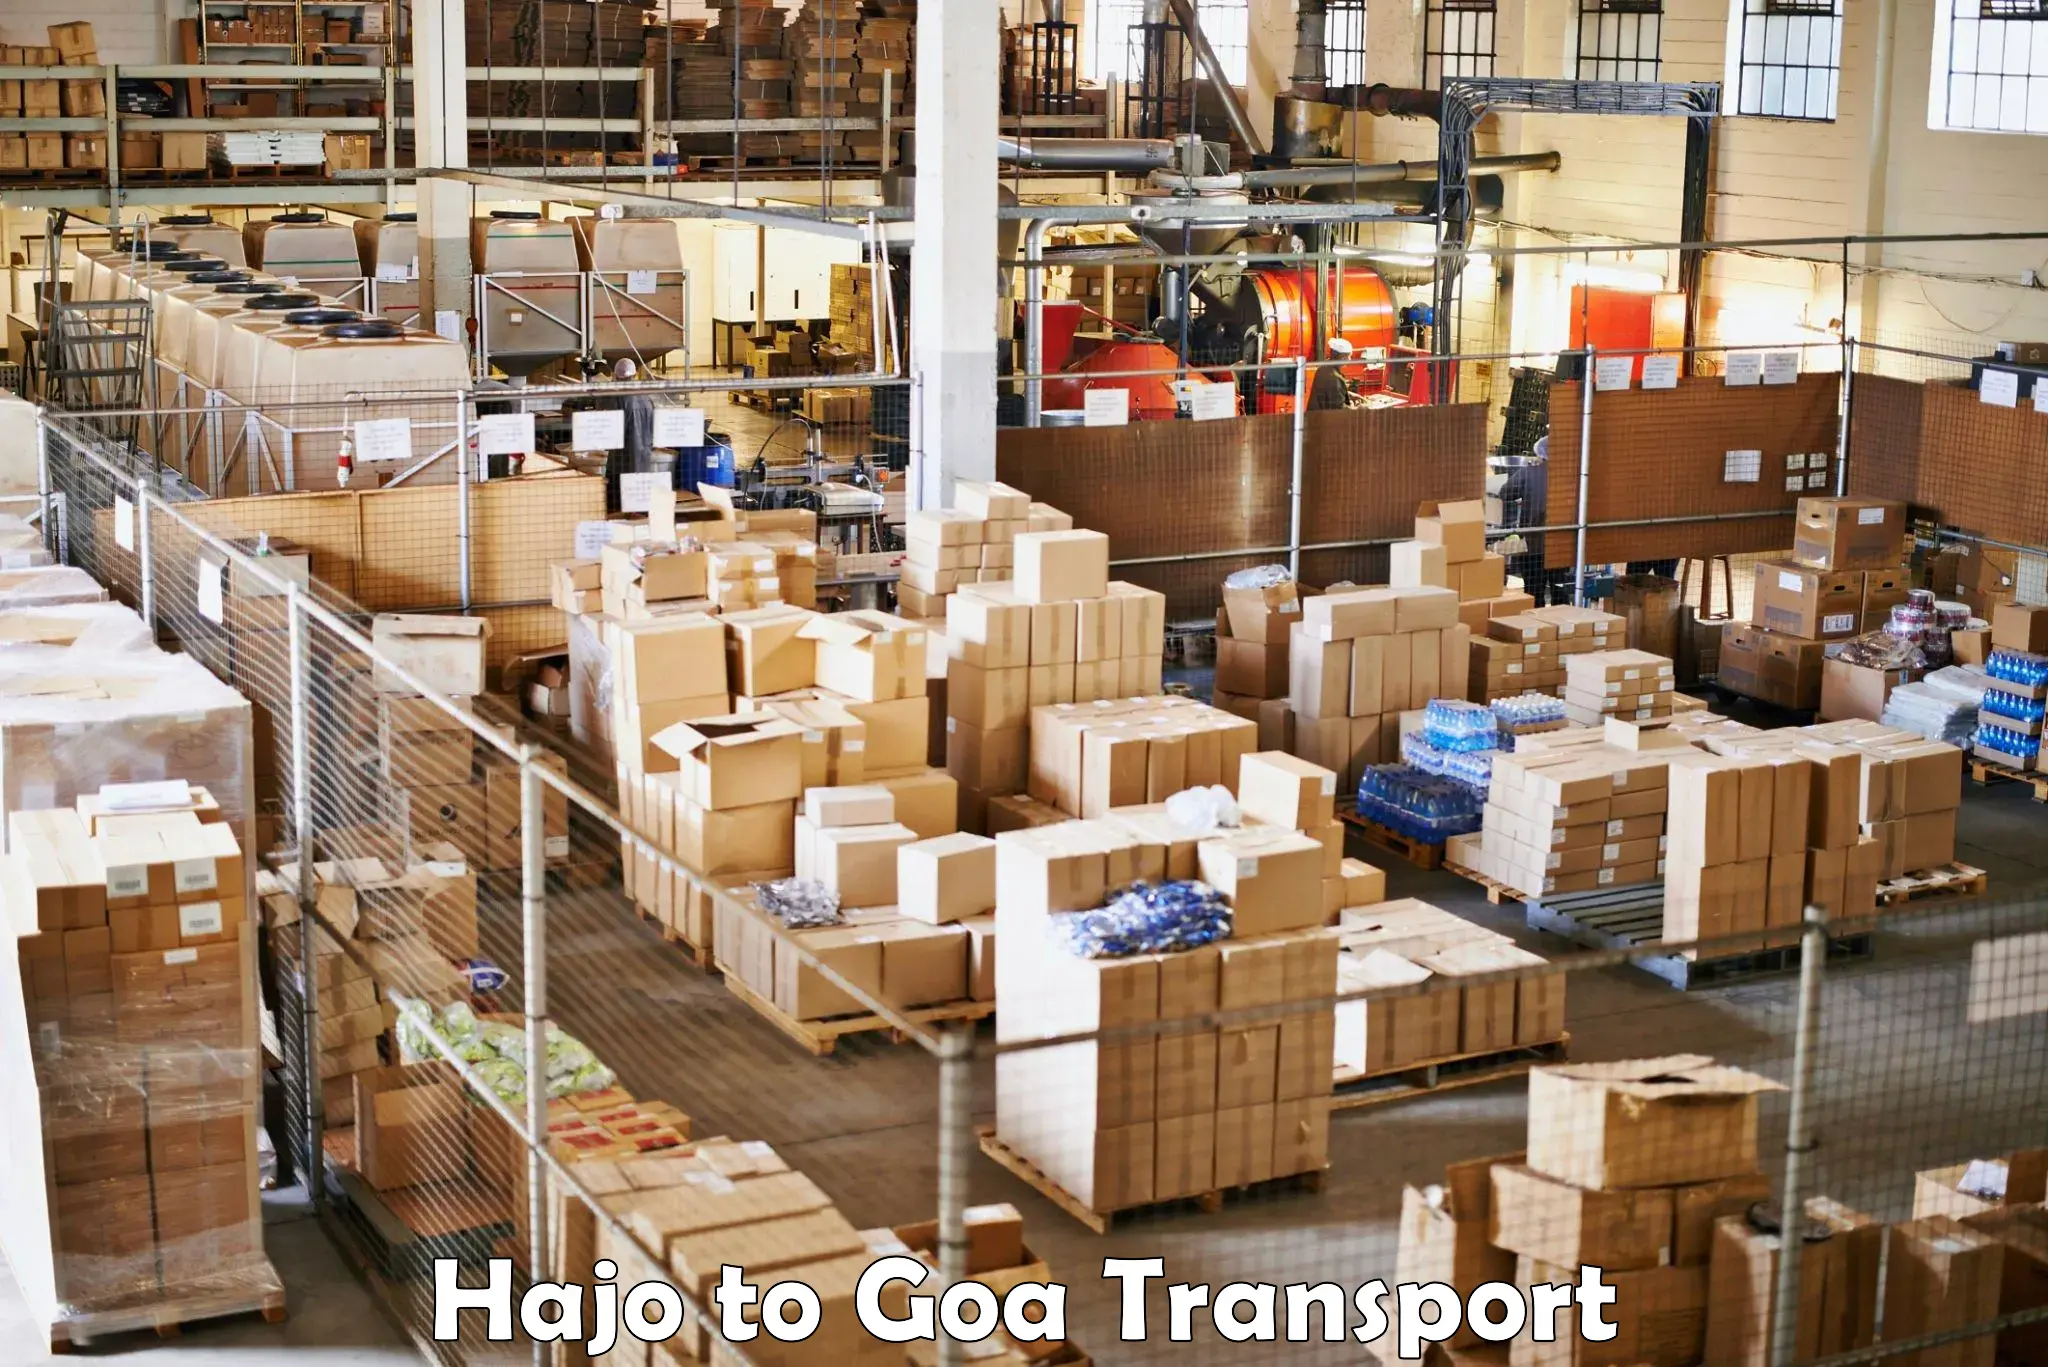 Daily parcel service transport Hajo to Goa University